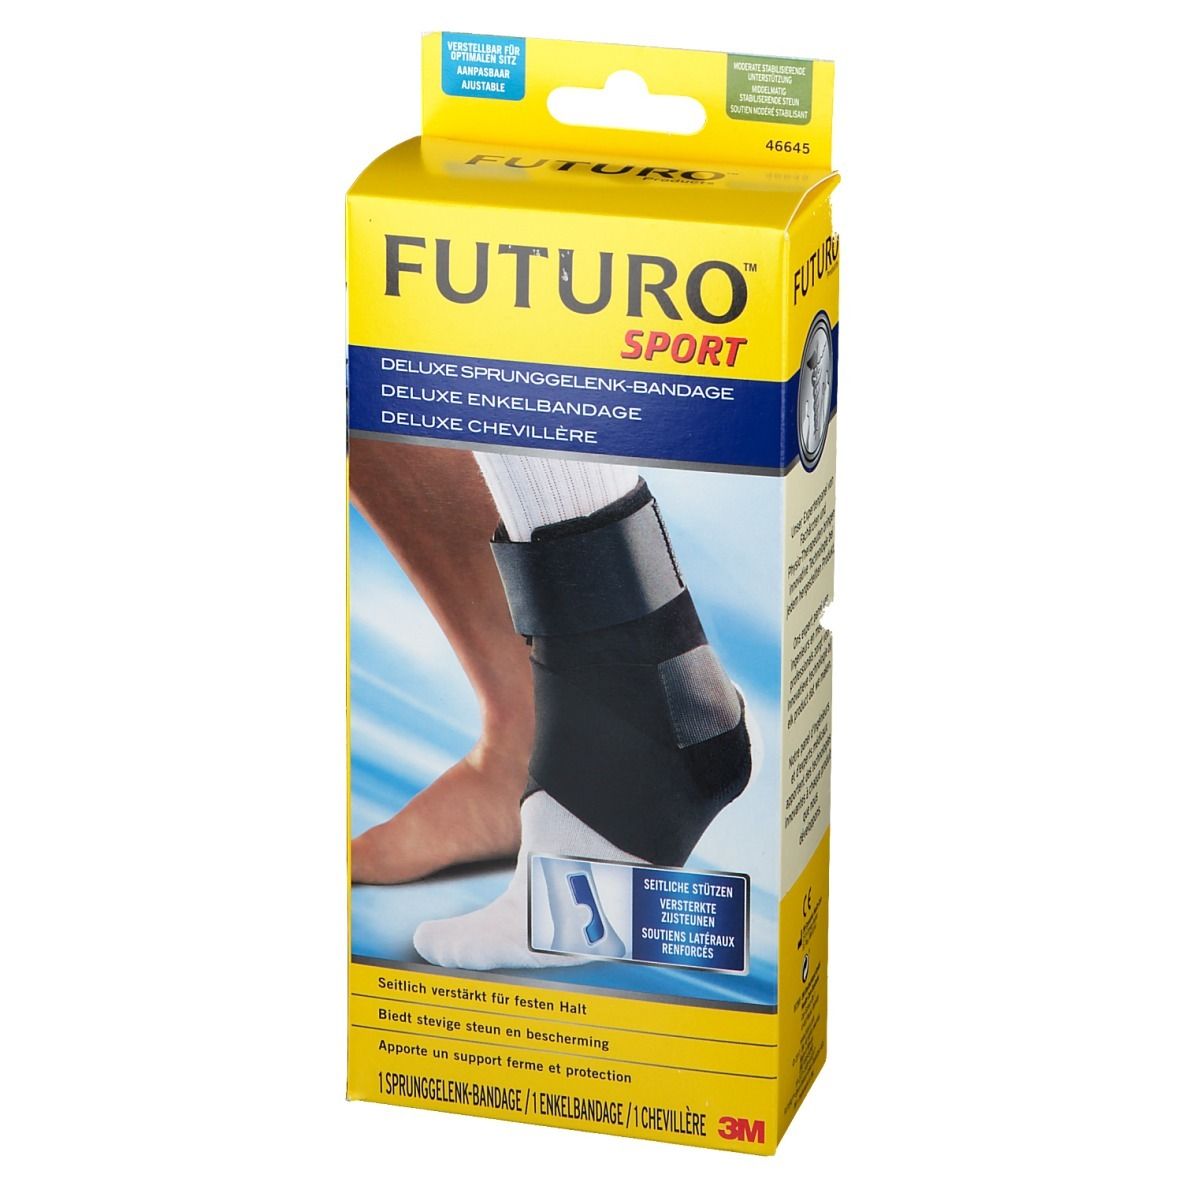 FUTURO™ Sport Deluxe Sprunggelenk-Bandage Einheitsgröße